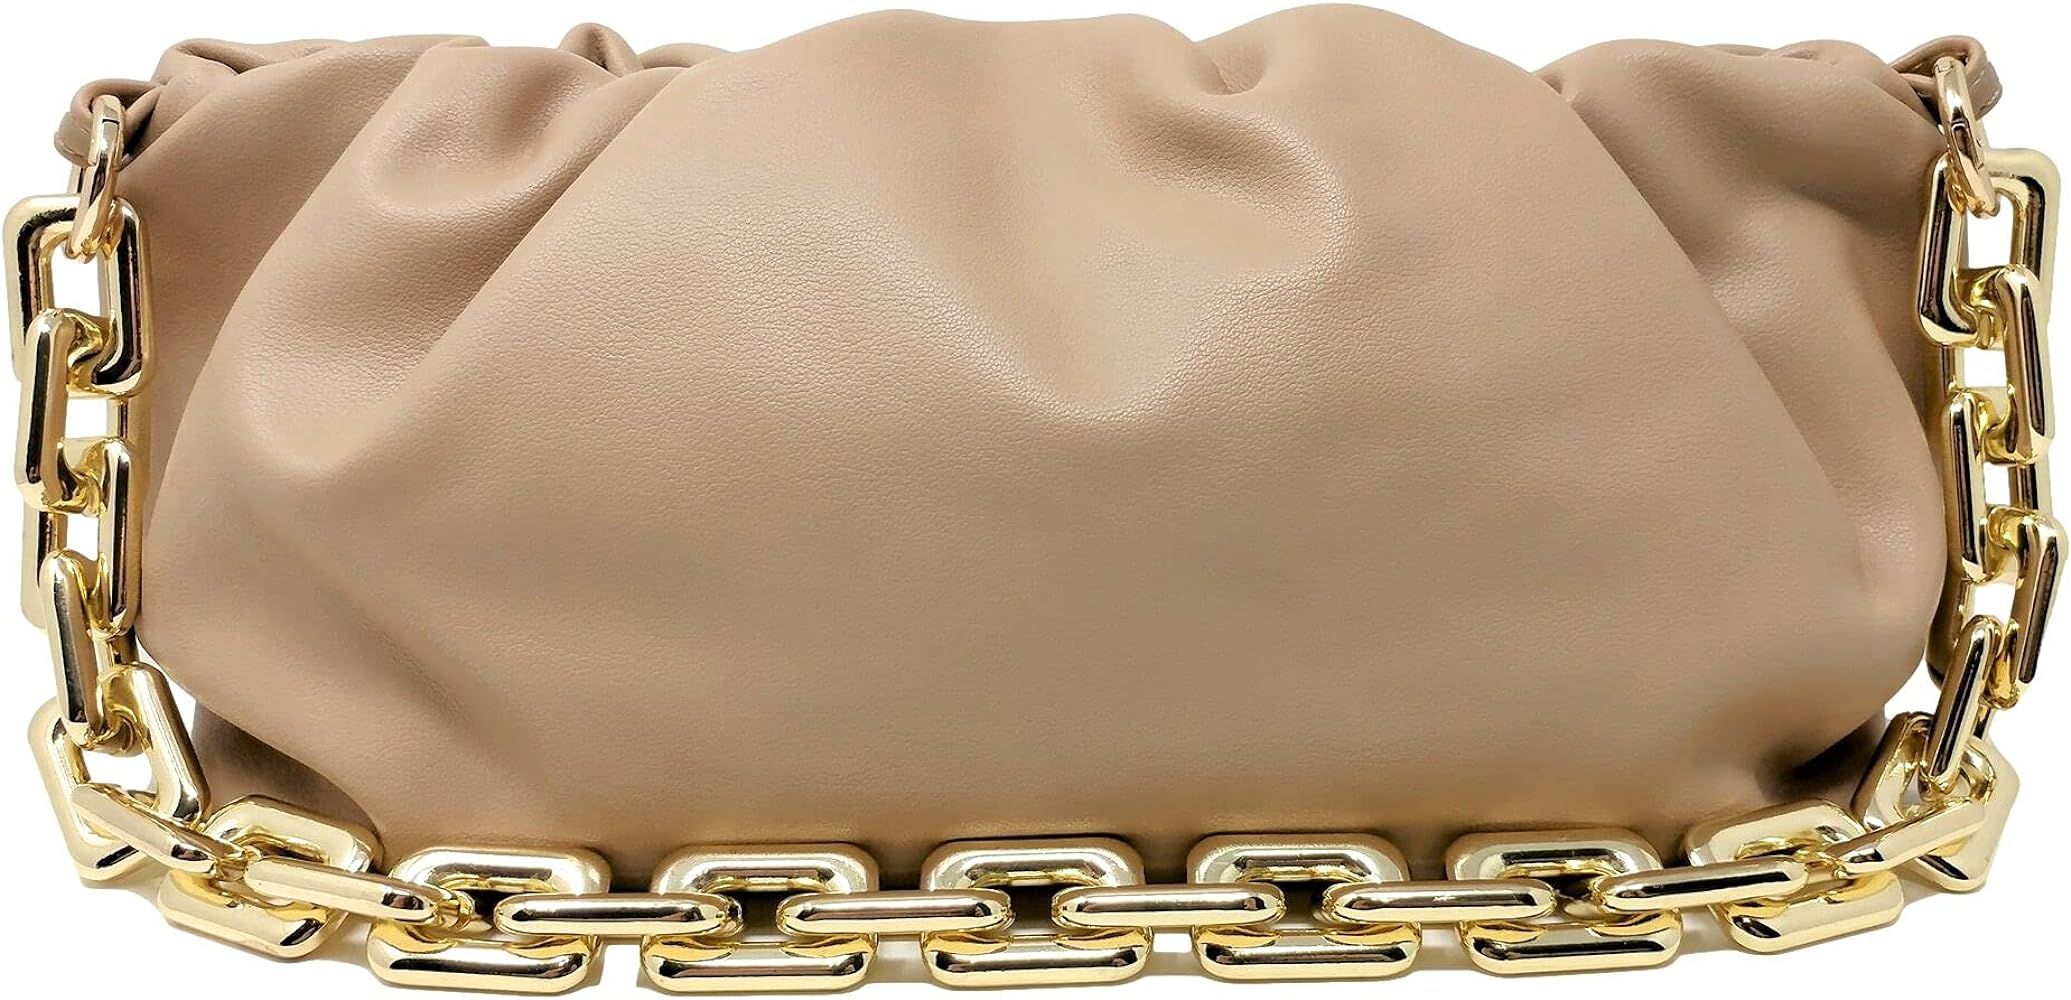 Women's Chain Pouch Bag | Cloud-Shaped Dumpling Clutch Purse | Ruched Chain Link Shoulder Handbag... | Amazon (US)